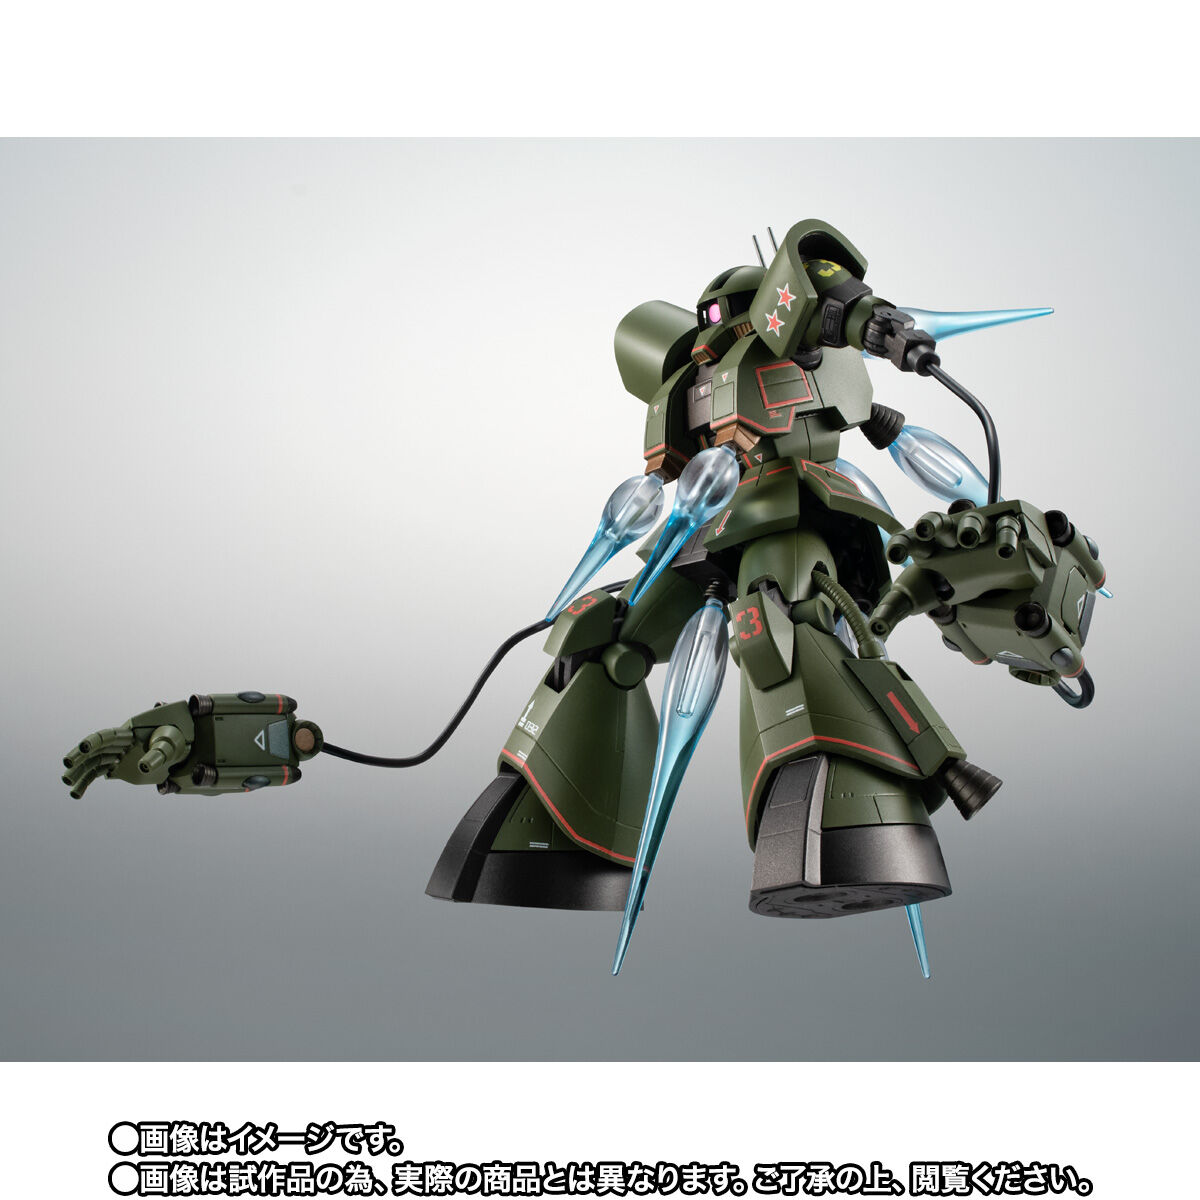 【限定販売】ROBOT魂〈SIDE MS〉『MS-06Z サイコミュ試験用ザク ver. A.N.I.M.E.』機動戦士ガンダム MSV 可動フィギュア-008